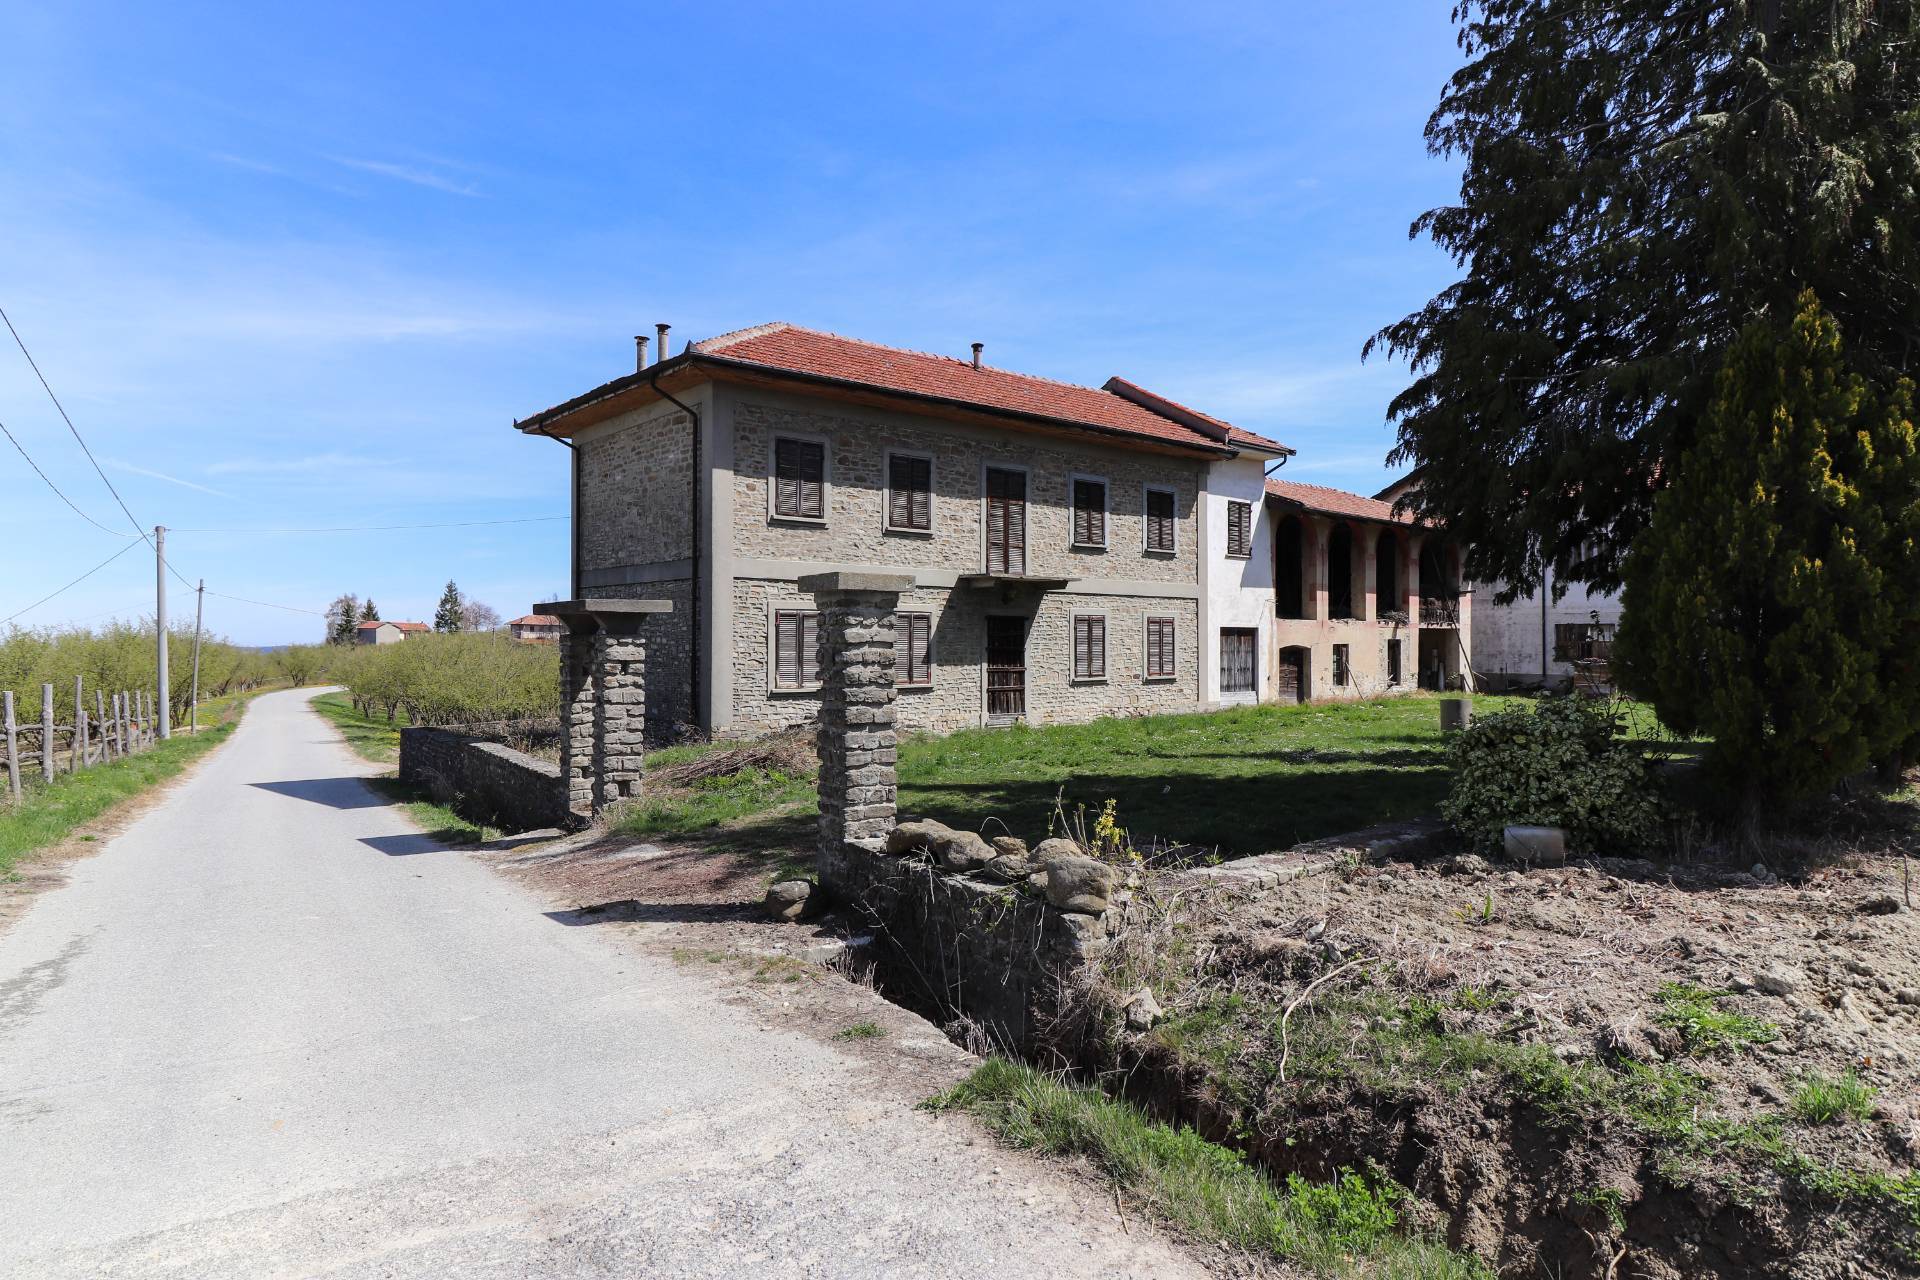 Rustico / Casale in vendita a Serravalle Langhe, 8 locali, prezzo € 270.000 | PortaleAgenzieImmobiliari.it